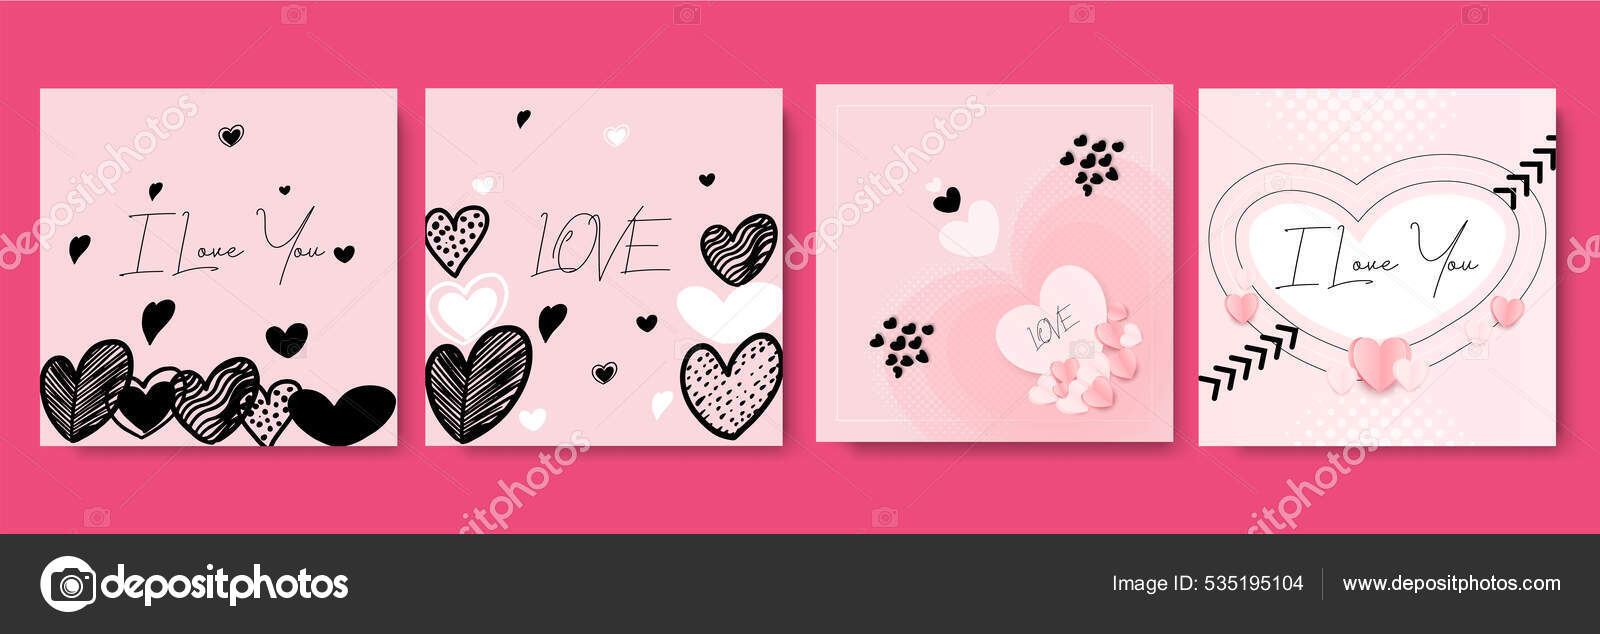 Feliz Dia Dos Namorados Cartões Saudação Modelos Arte Quadrada Abstrata  imagem vetorial de salmanalfa© 535195104